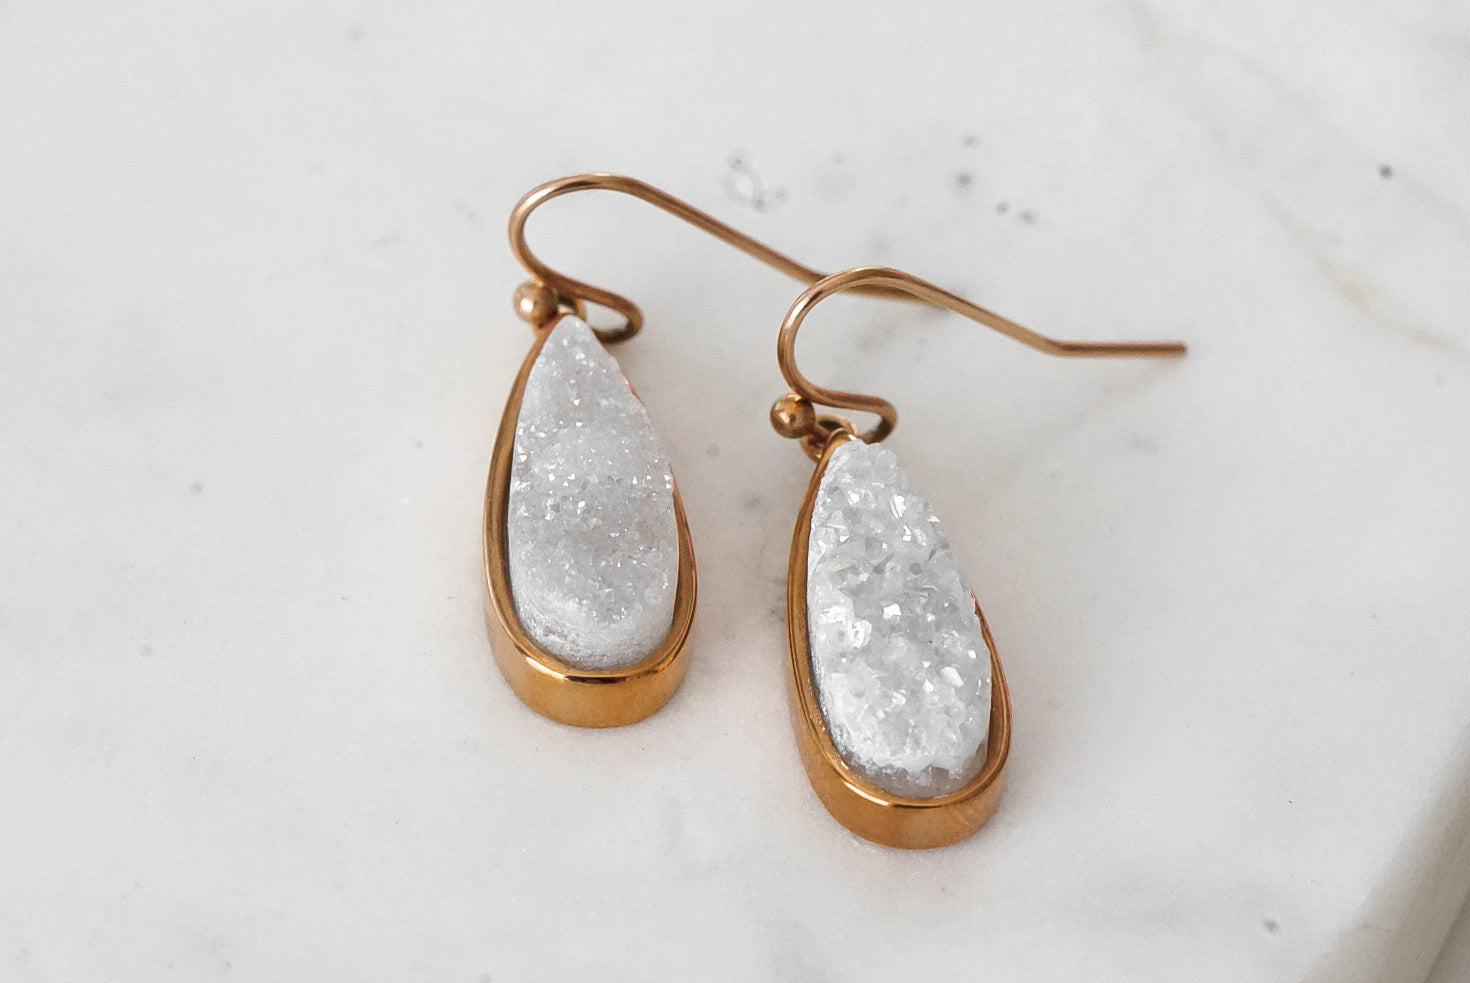 Druzy Collection - Rose Gold Petite Quartz Drop Earrings fina designersmycken för män och kvinnor